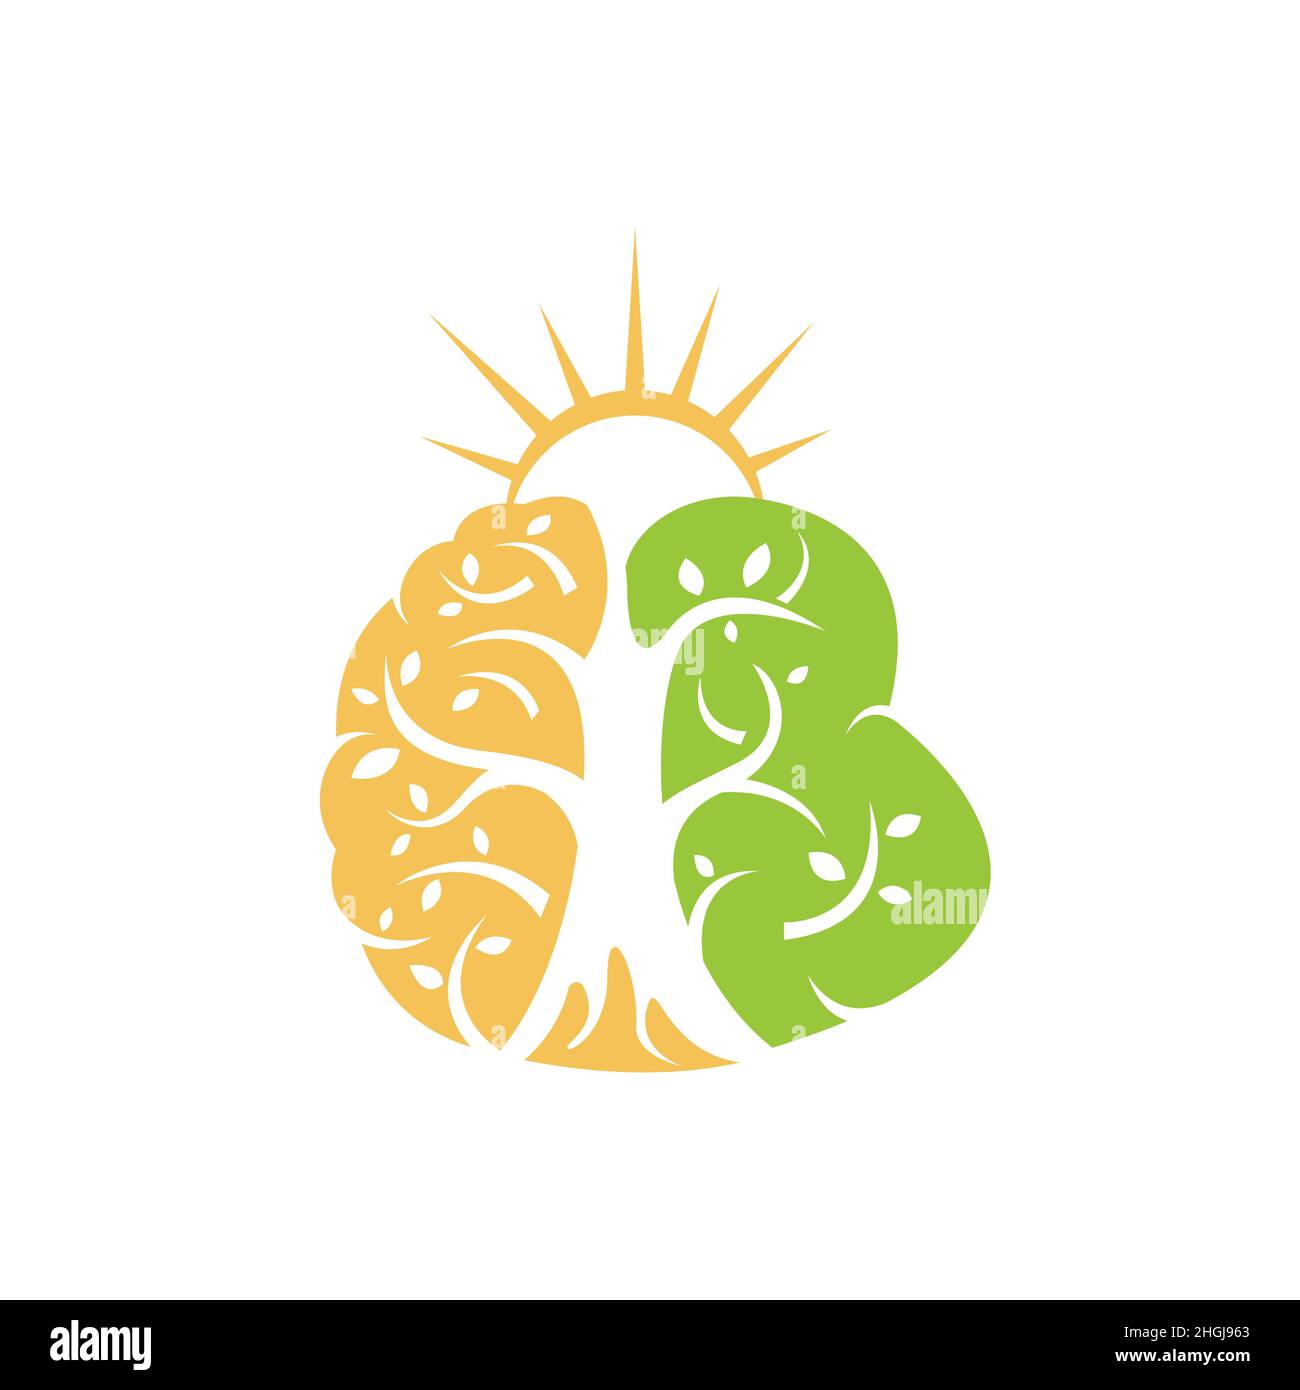 Hirnbaum psychische Gesundheit und physikalische Therapie Logo Design Vektor. Das Logo der psychischen Gesundheit des Gehirns kombiniert sich mit Baum und Wurzeln Stock Vektor